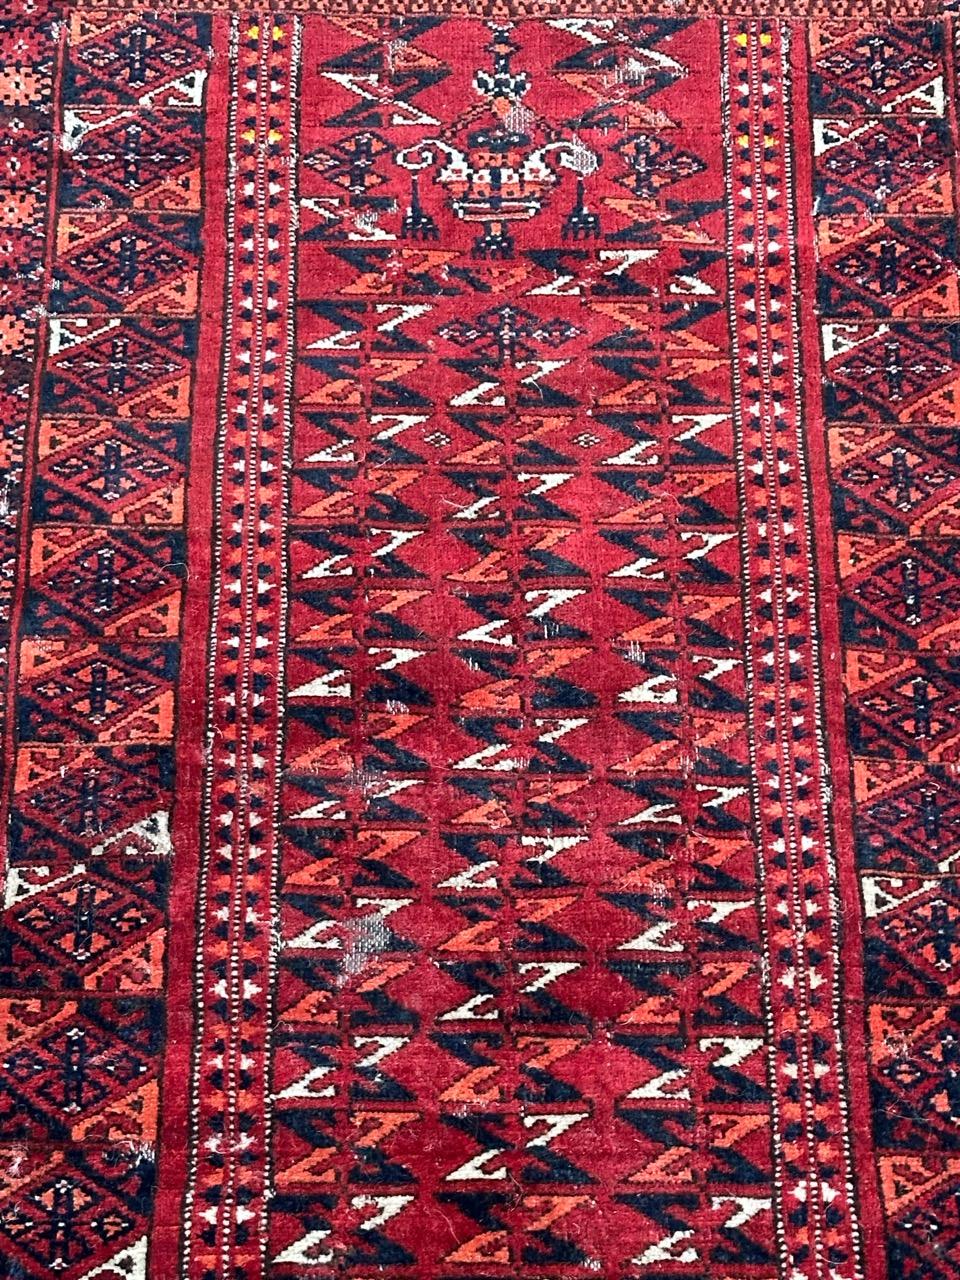 Joli tapis antique tribal turkmène au design inhabituel avec en haut, le dessin de deux constructions et des motifs tribaux géométriques à d'autres endroits, et aux belles couleurs naturelles, entièrement et finement noué à la main avec de la laine